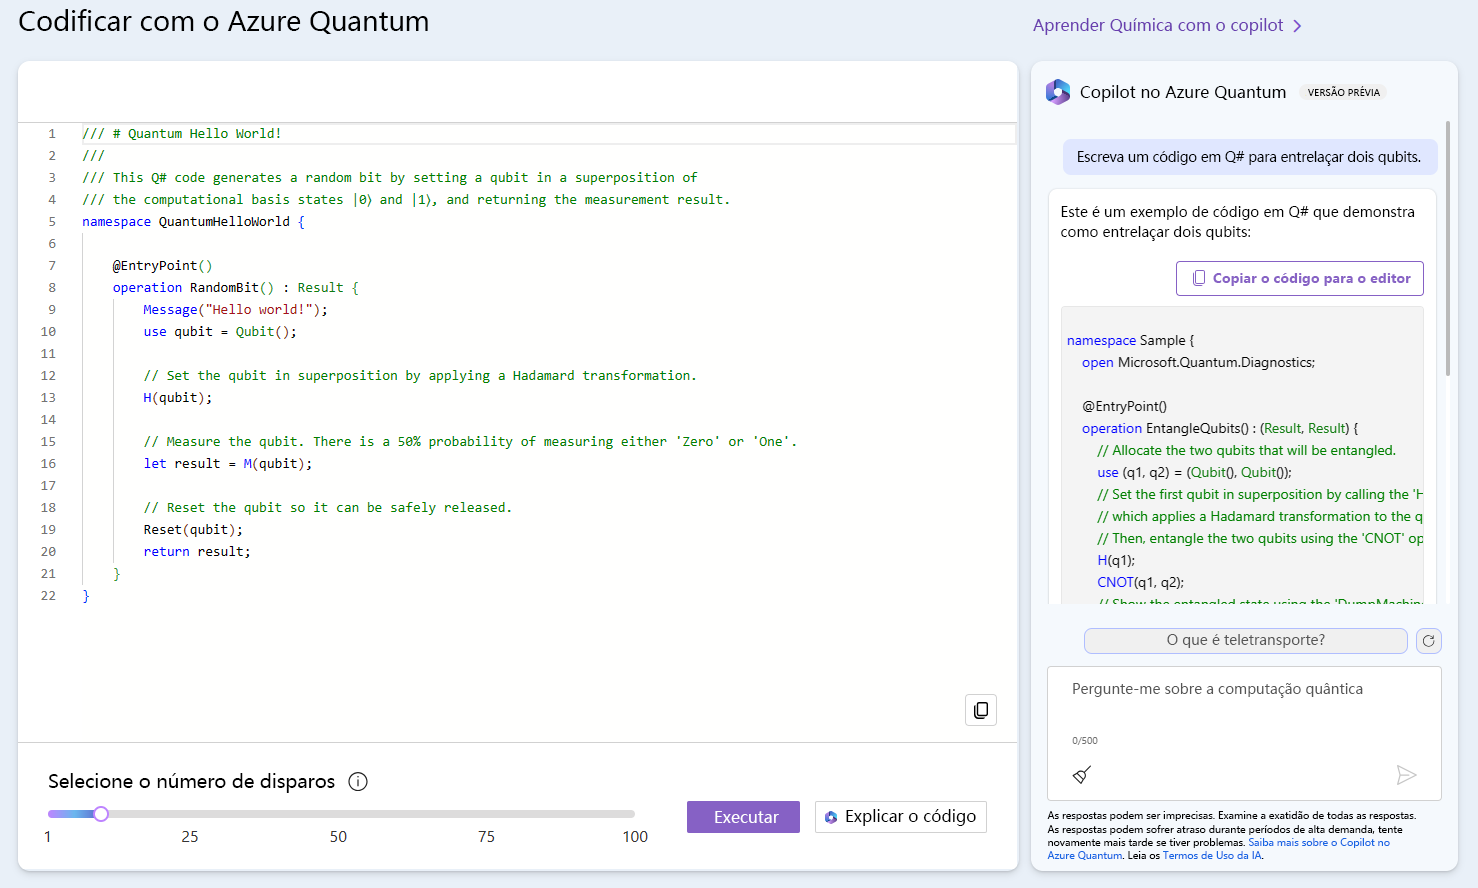 Captura de tela do Copilot no Azure Quantum mostrando um exemplo e a resposta do Copilot a uma pergunta para gerar novo código.